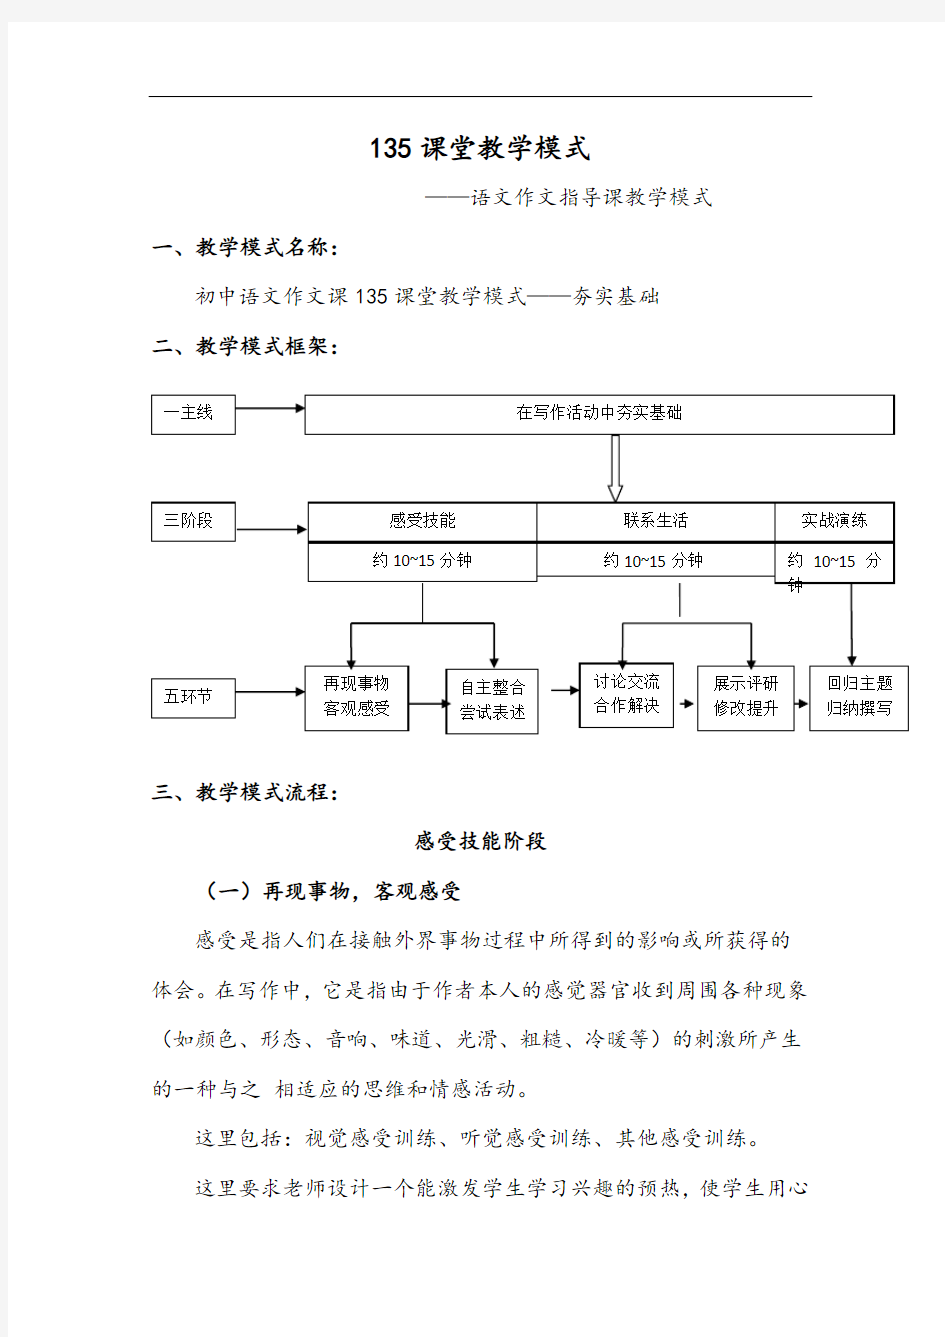 初中语文作文指导课教学模式及教学设计课题